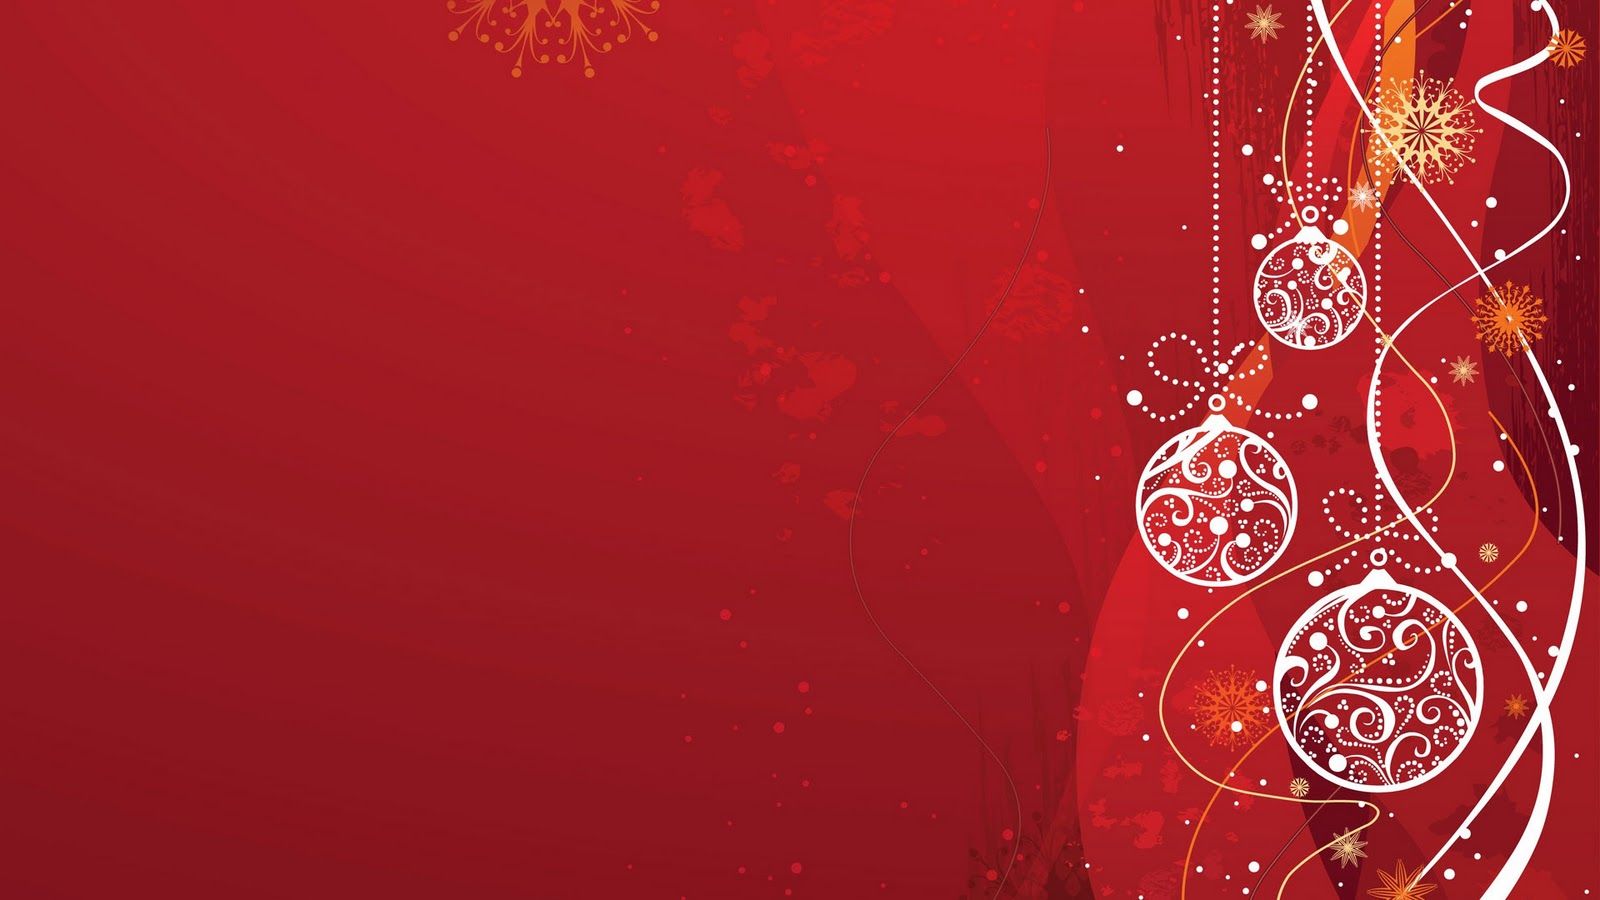 Mùa Giáng Sinh đã đến rồi! Hãy trang trí cho màn hình của bạn với những Christmas background đầy màu sắc và lấp lánh! Tìm kiếm cho mình bộ sưu tập Christmas background tuyệt vời và tạo ra không gian lễ hội cho mình mỗi ngày!